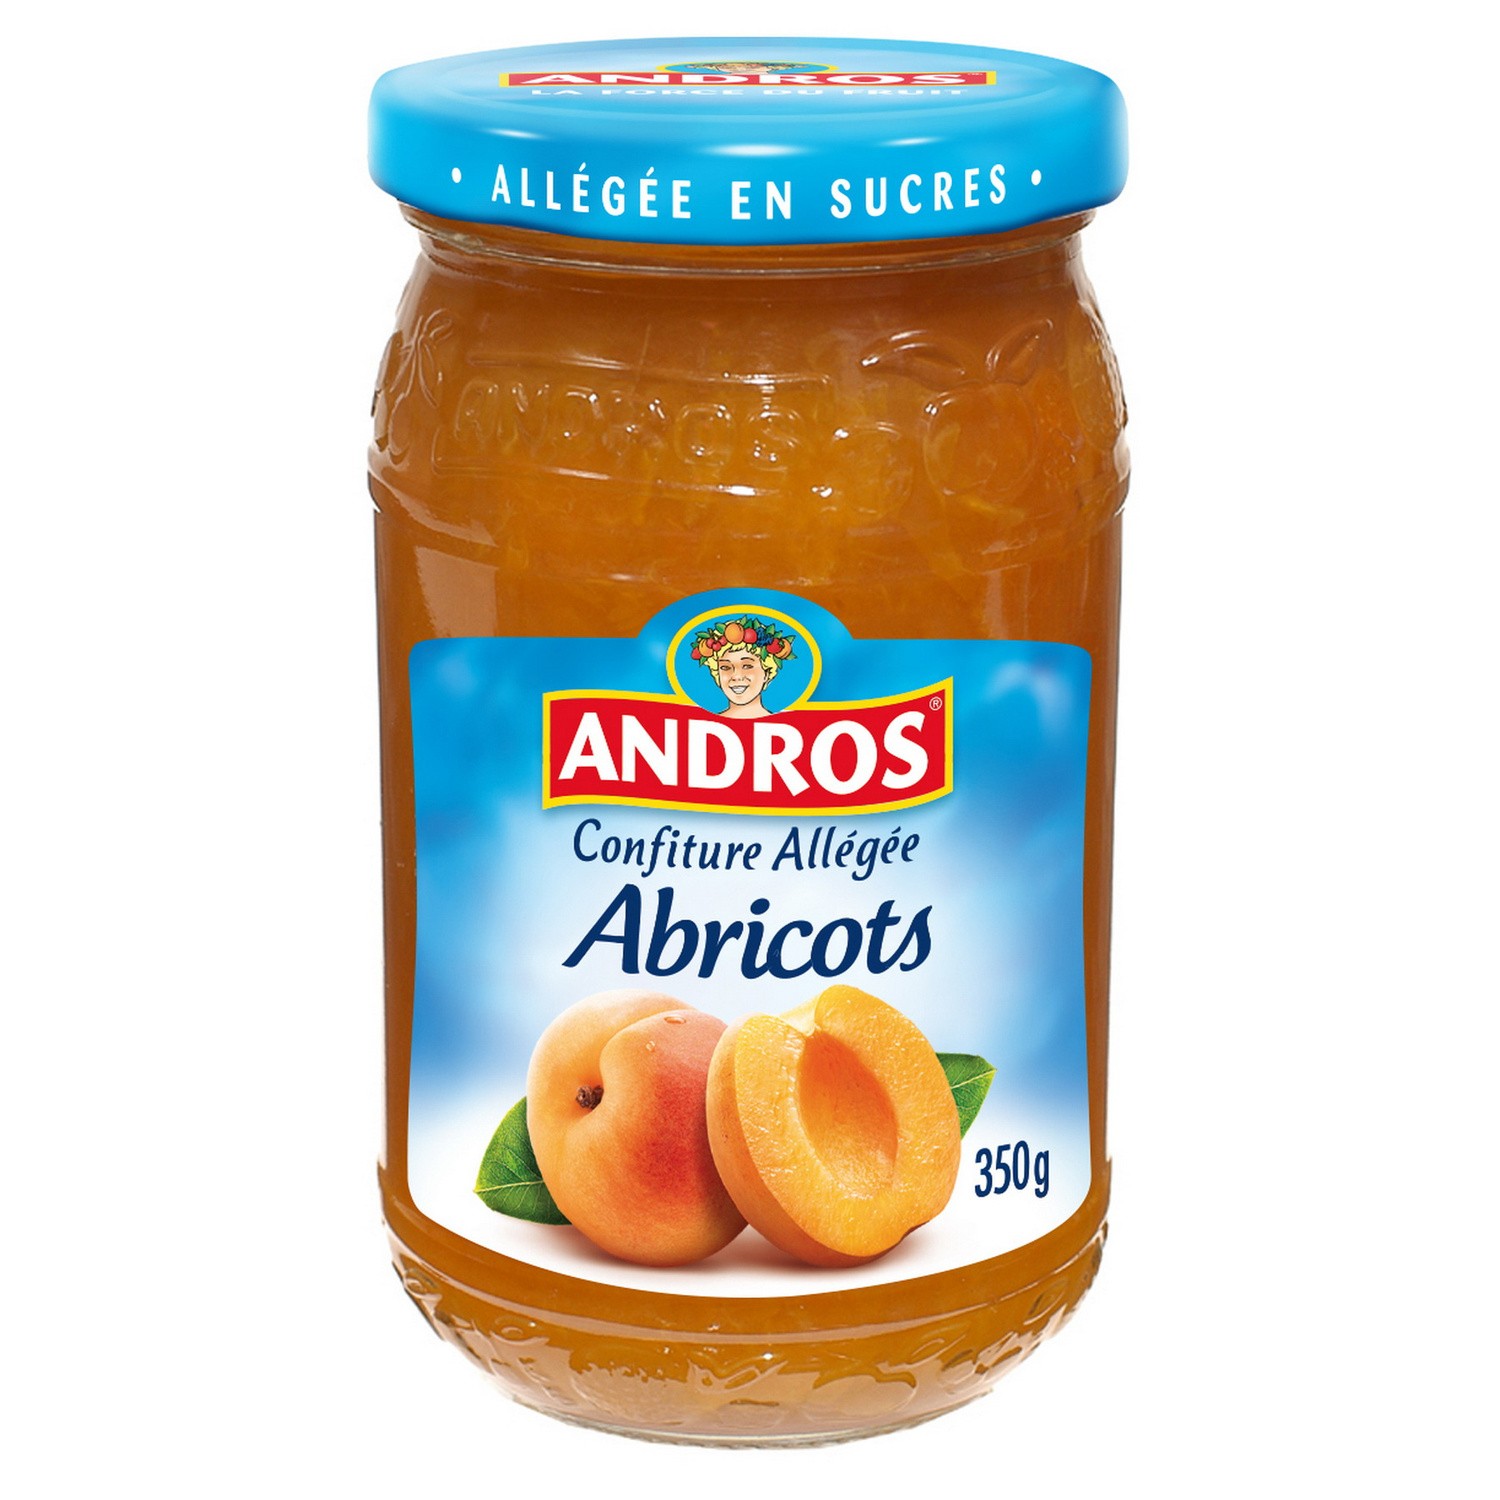 Confiture Abricot allégée en sucres